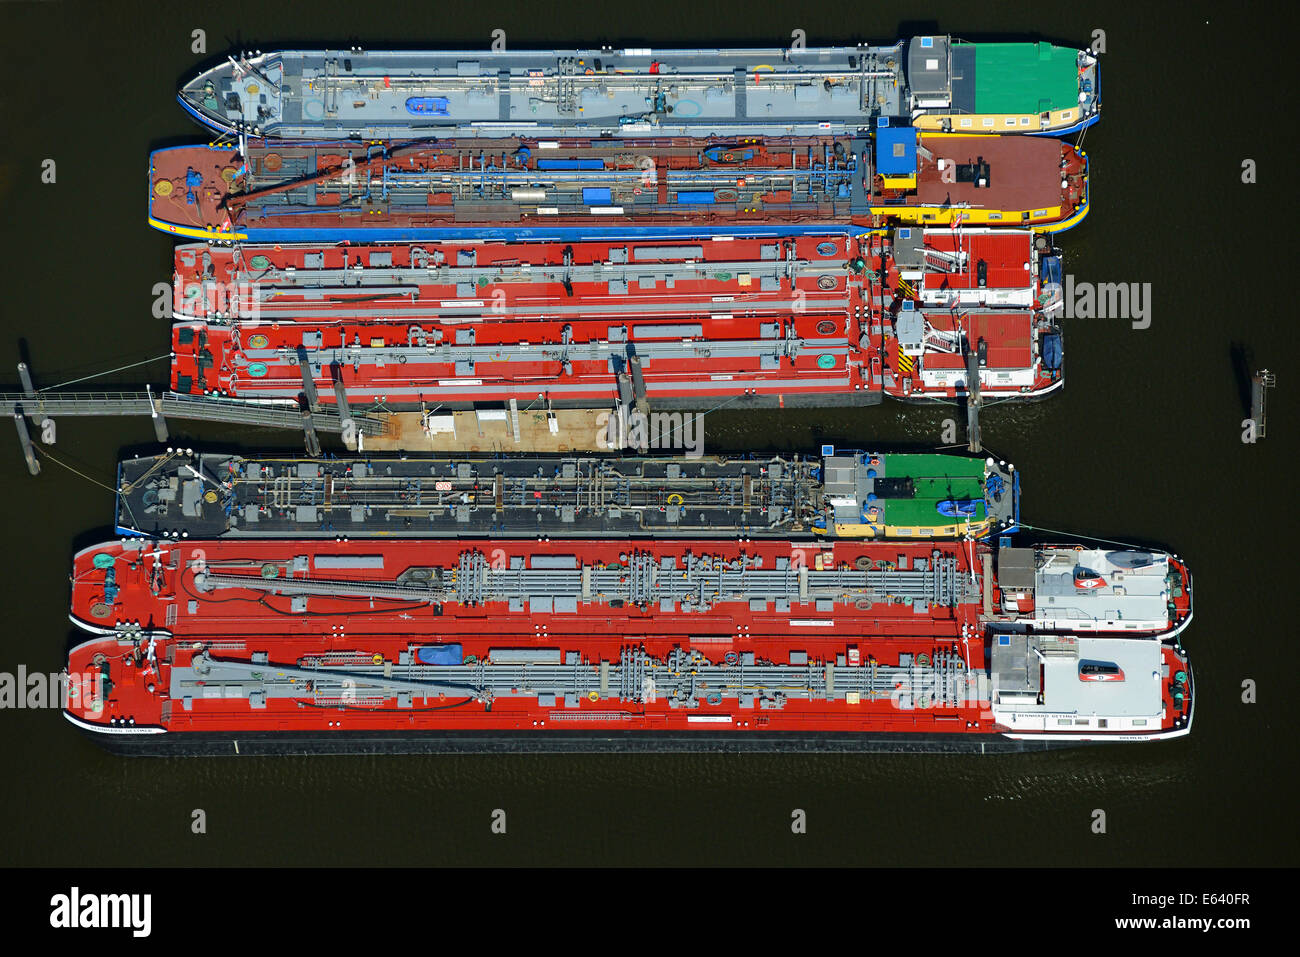 Alimentazione, navi petroliere di Dettmer shipping company, la fornitura di materiali di consumo per il traffico marittimo, il porto di Amburgo, Amburgo, Germania Foto Stock